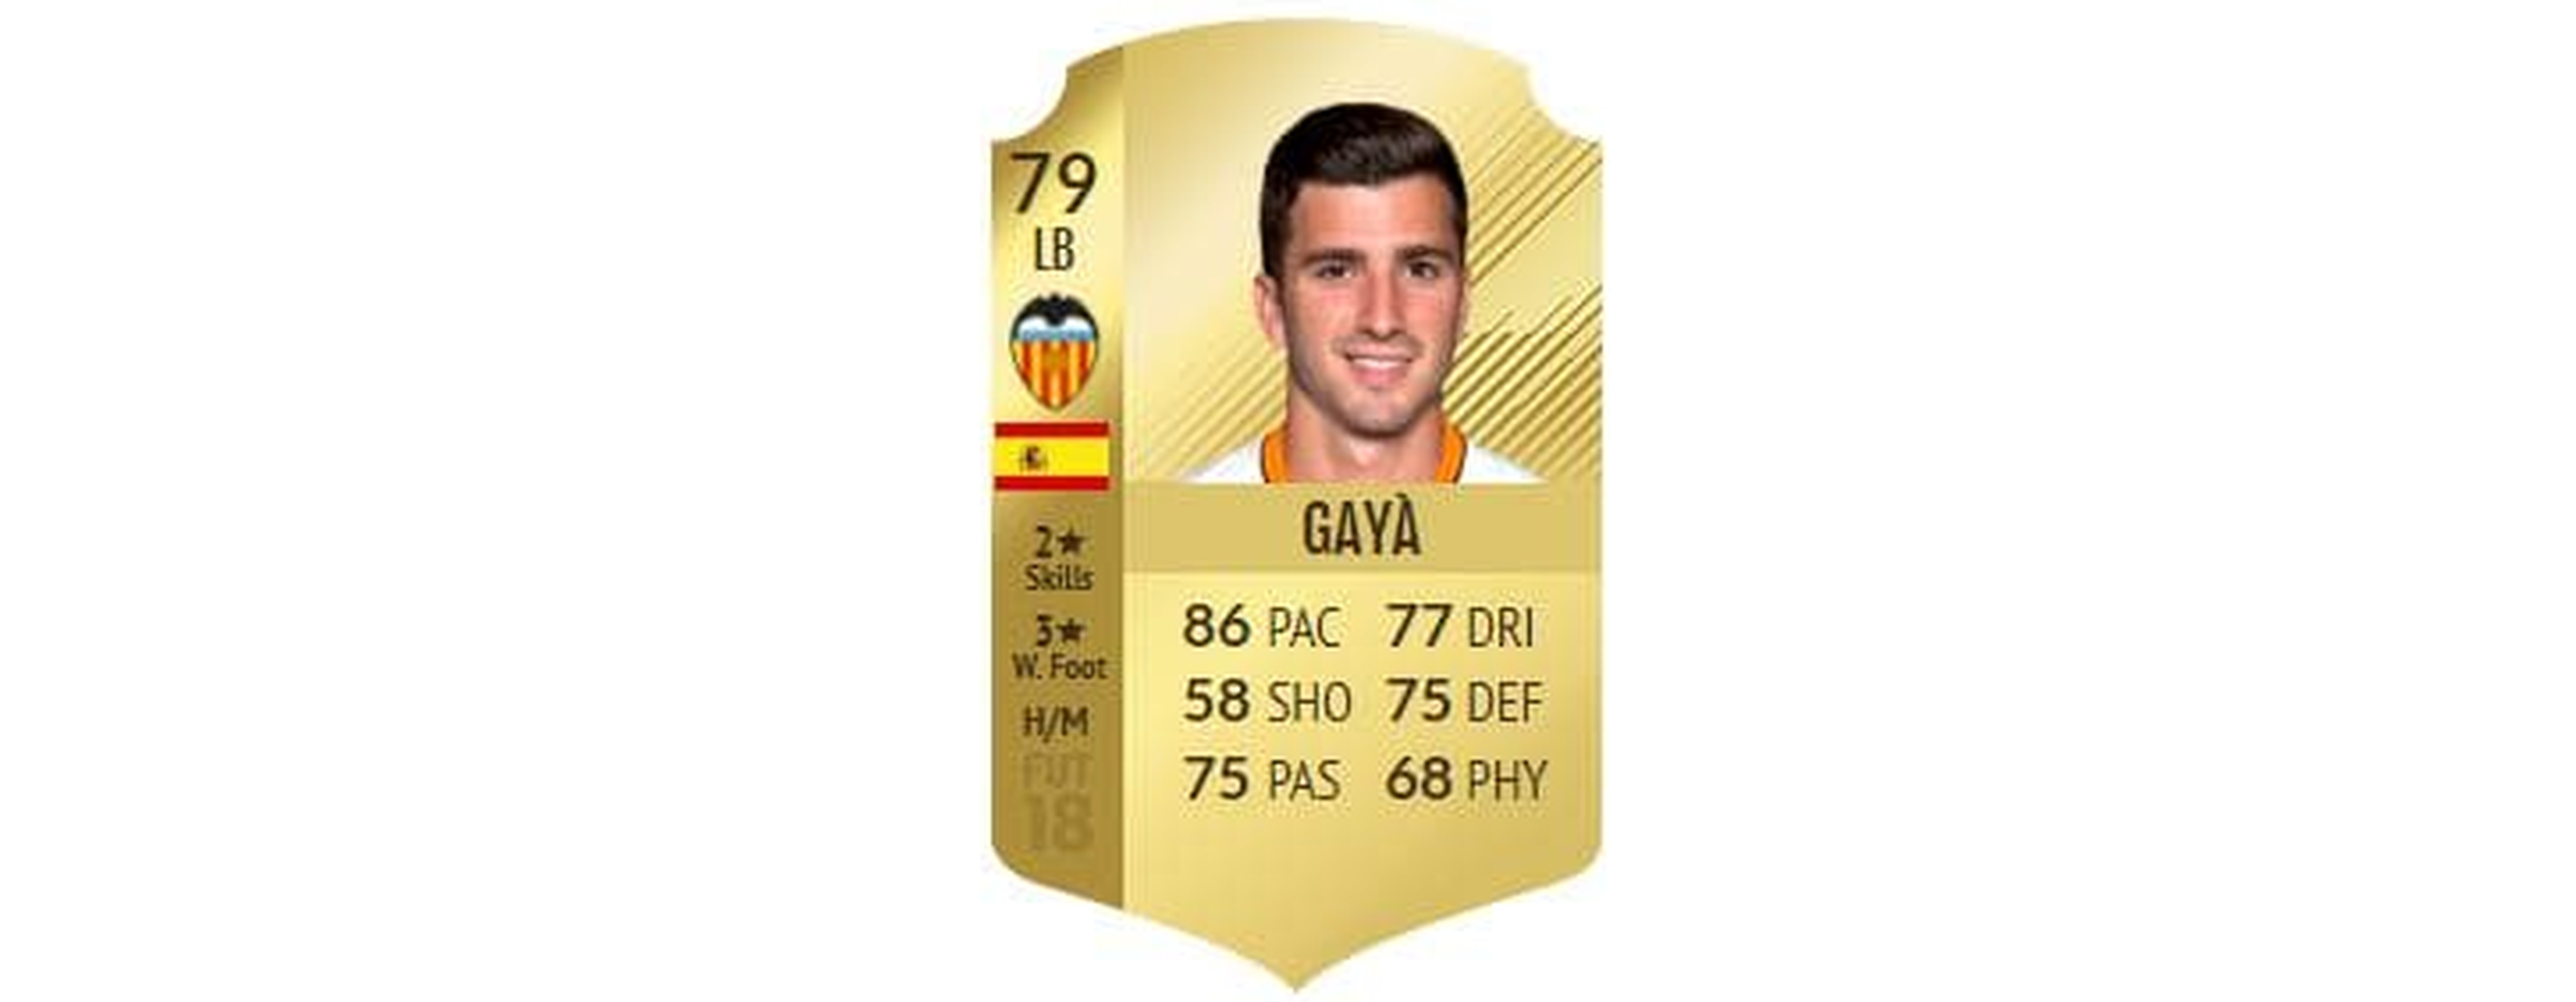 FIFA 18 - Gayá